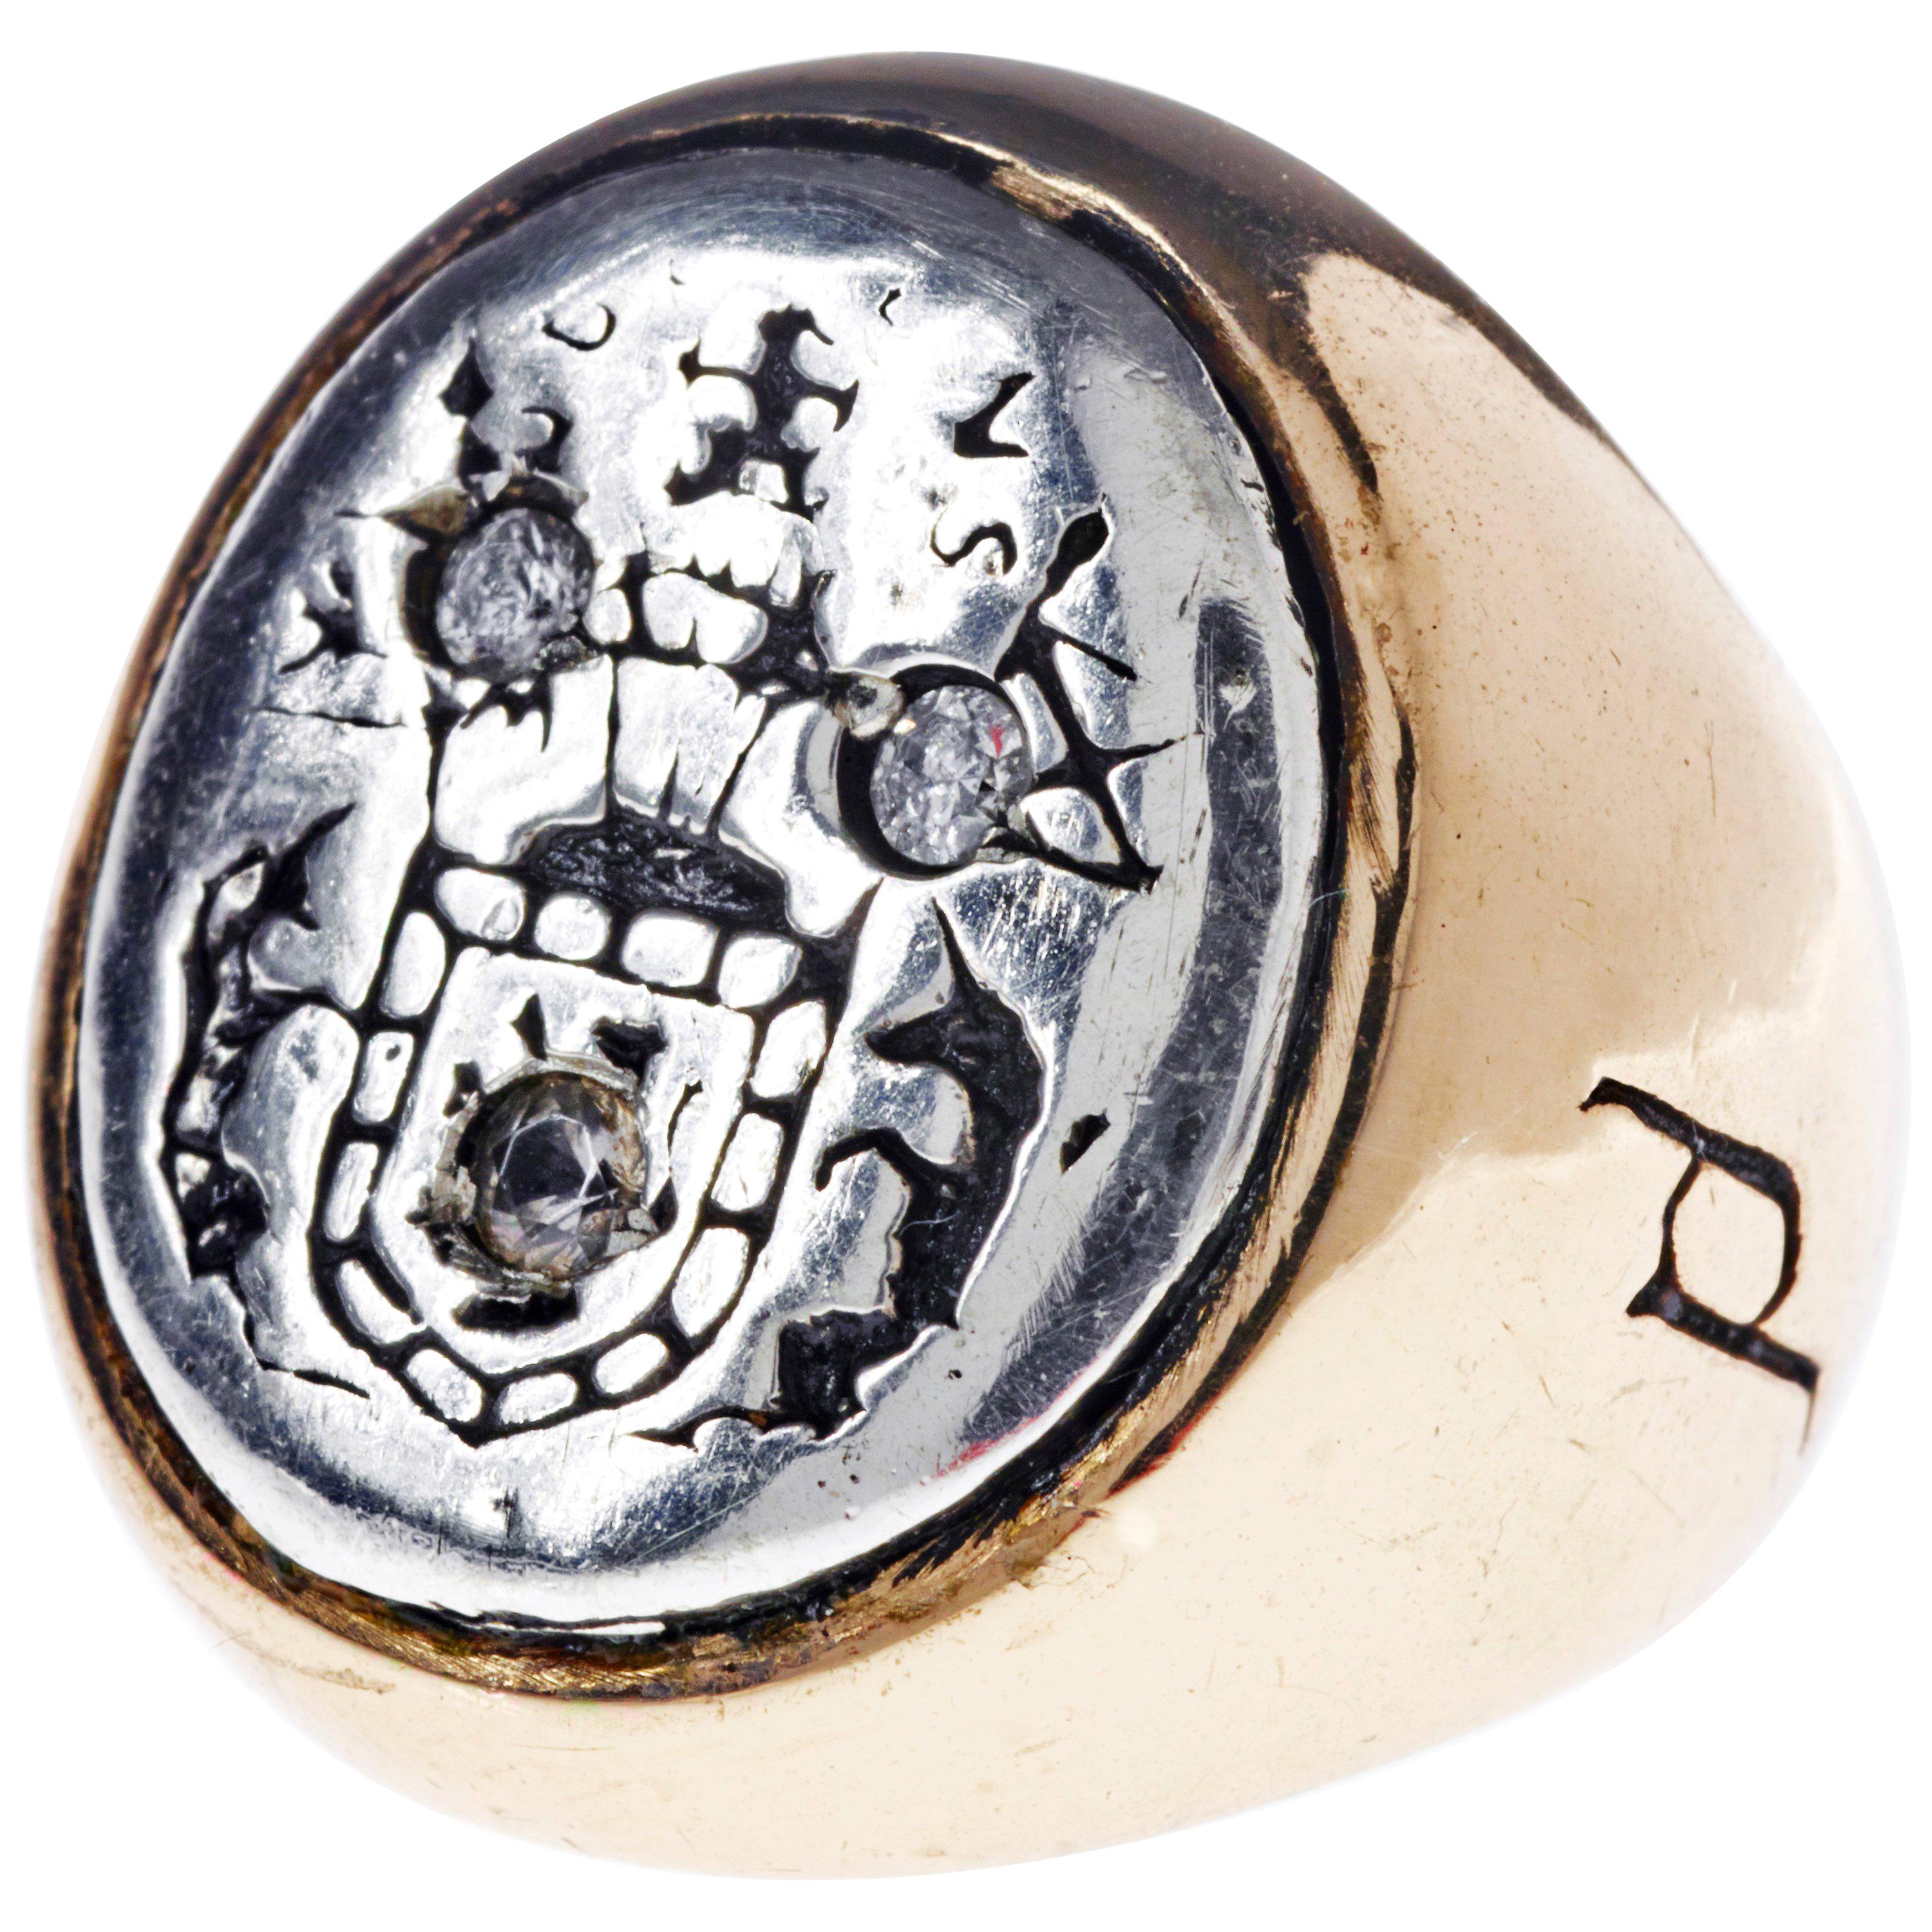 White Diamond Crest Signet Ring Silber Bronze J Dauphin kann von Frauen oder Männern getragen werden.

Inspiriert durch den Ring der Königin Maria von Schottland. Goldener Siegelring; graviert; Schultern mit Blumen und Blättern verziert. Ovale